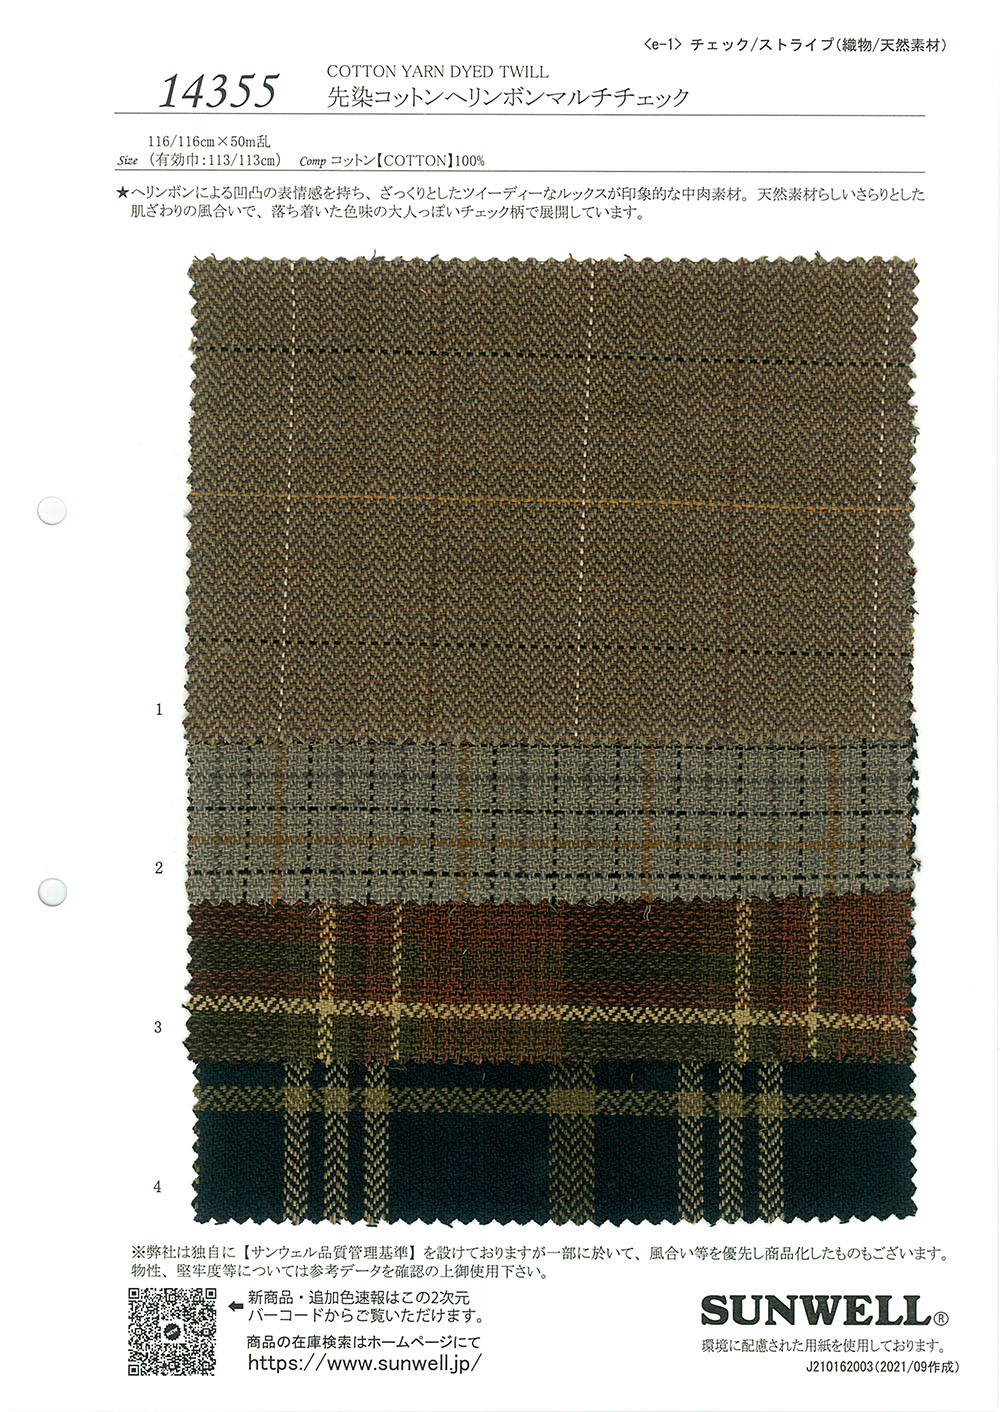 14355 Cuadros Múltiples De Espiga De Algodón Teñido En Hilo[Fabrica Textil] SUNWELL